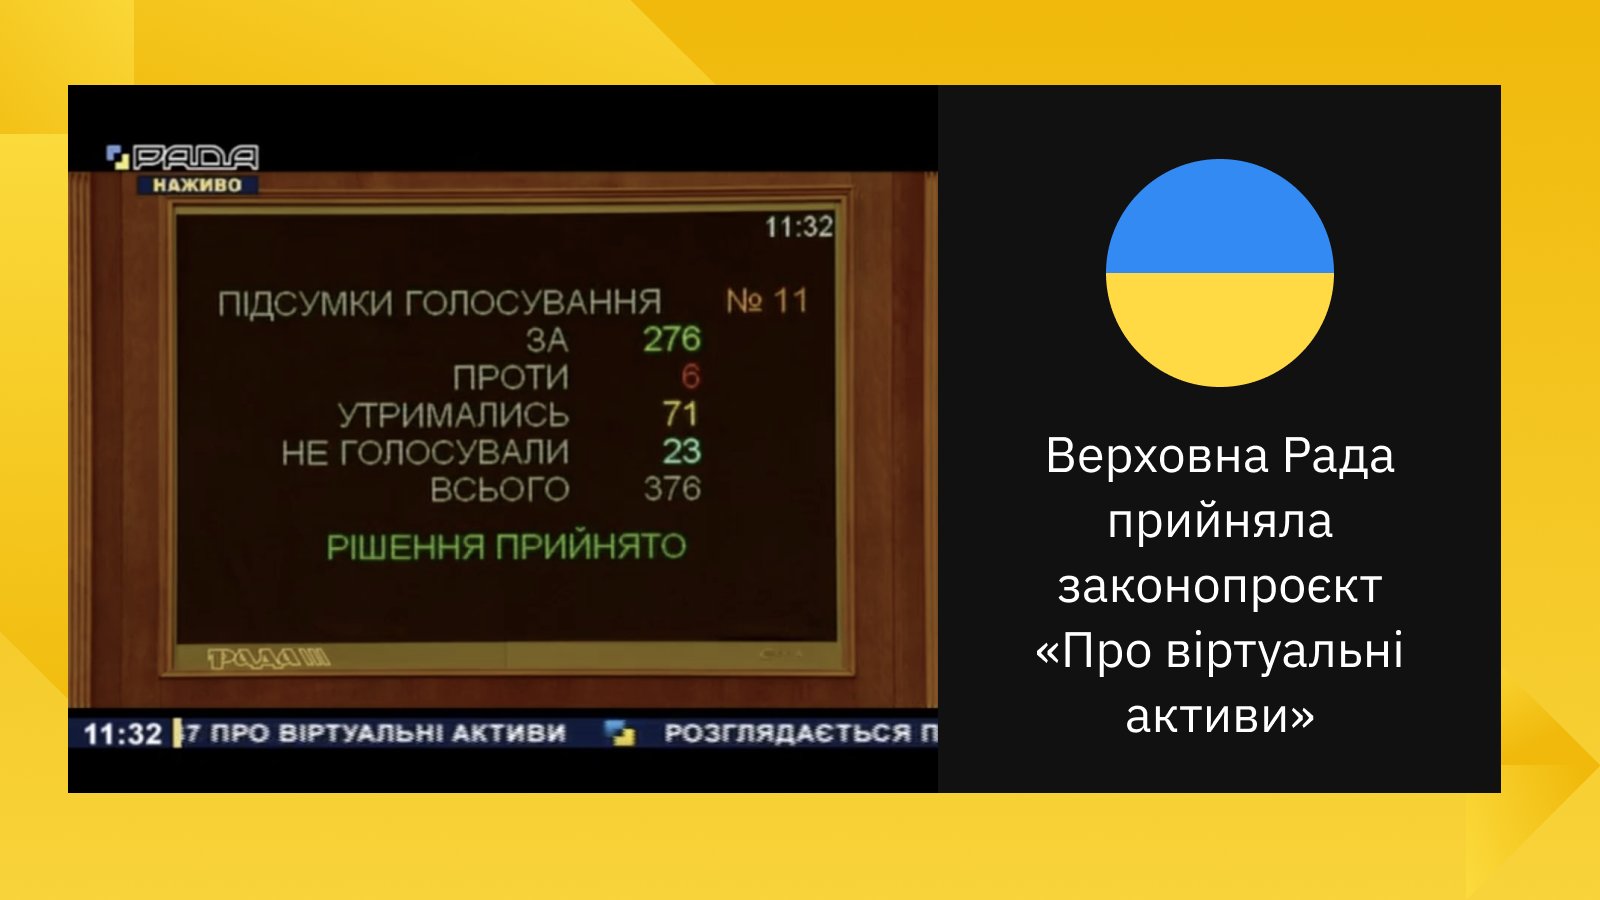 Det ukrainske parlaments afstemning om Bitcoin -lov vinder med overvældende flertal